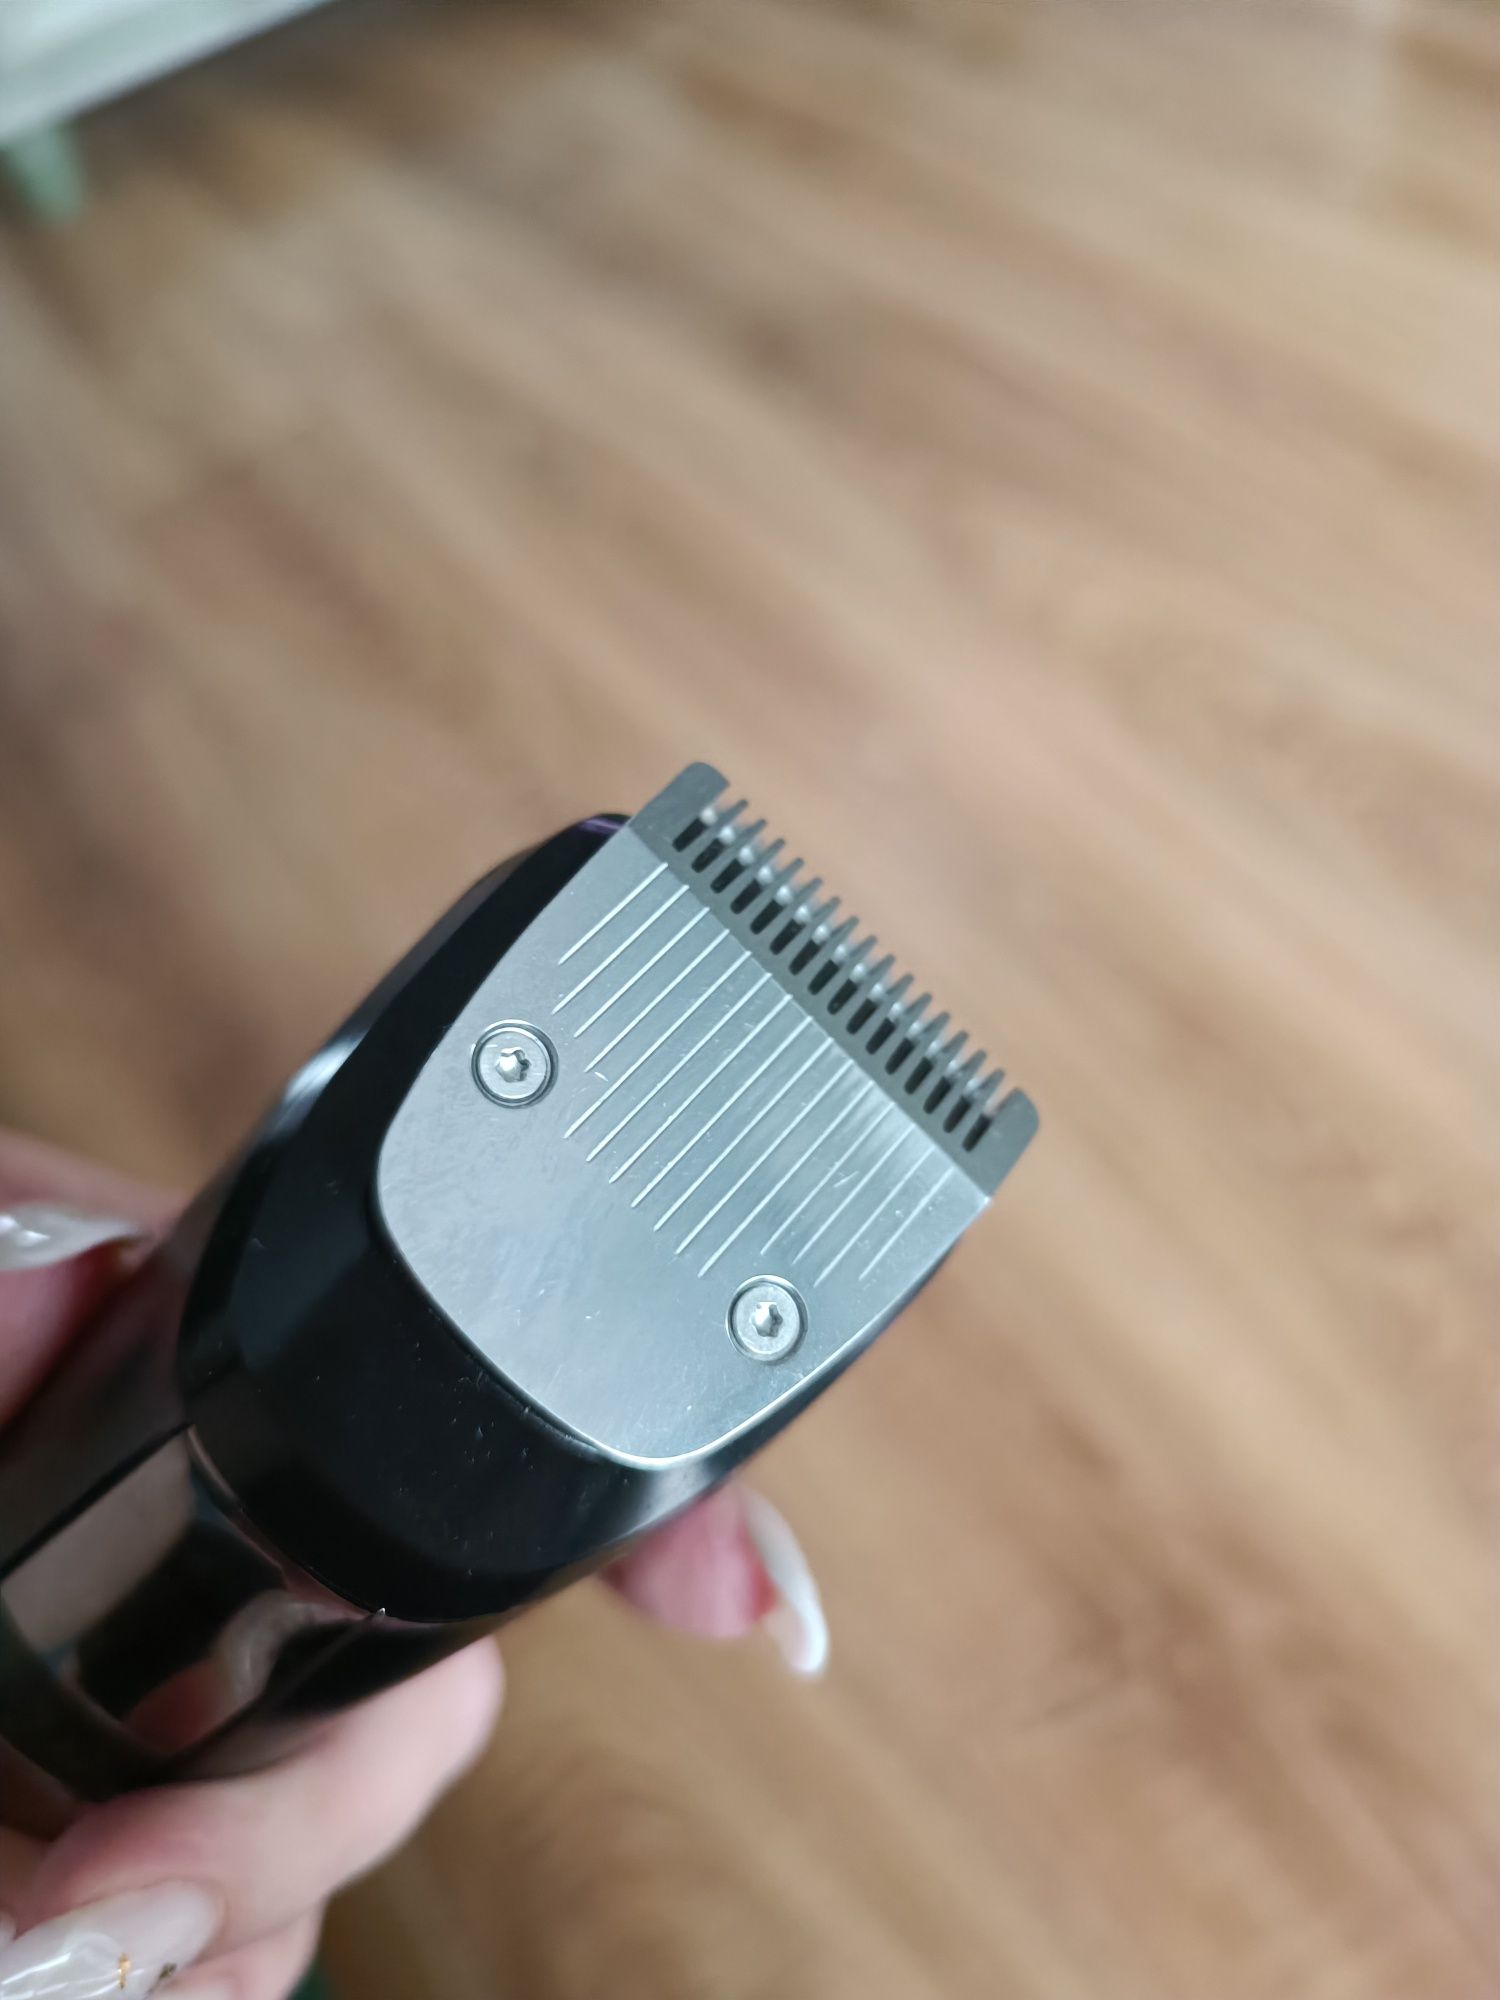 Nowa maszynka Smart hoffen do strzyżenia włosów